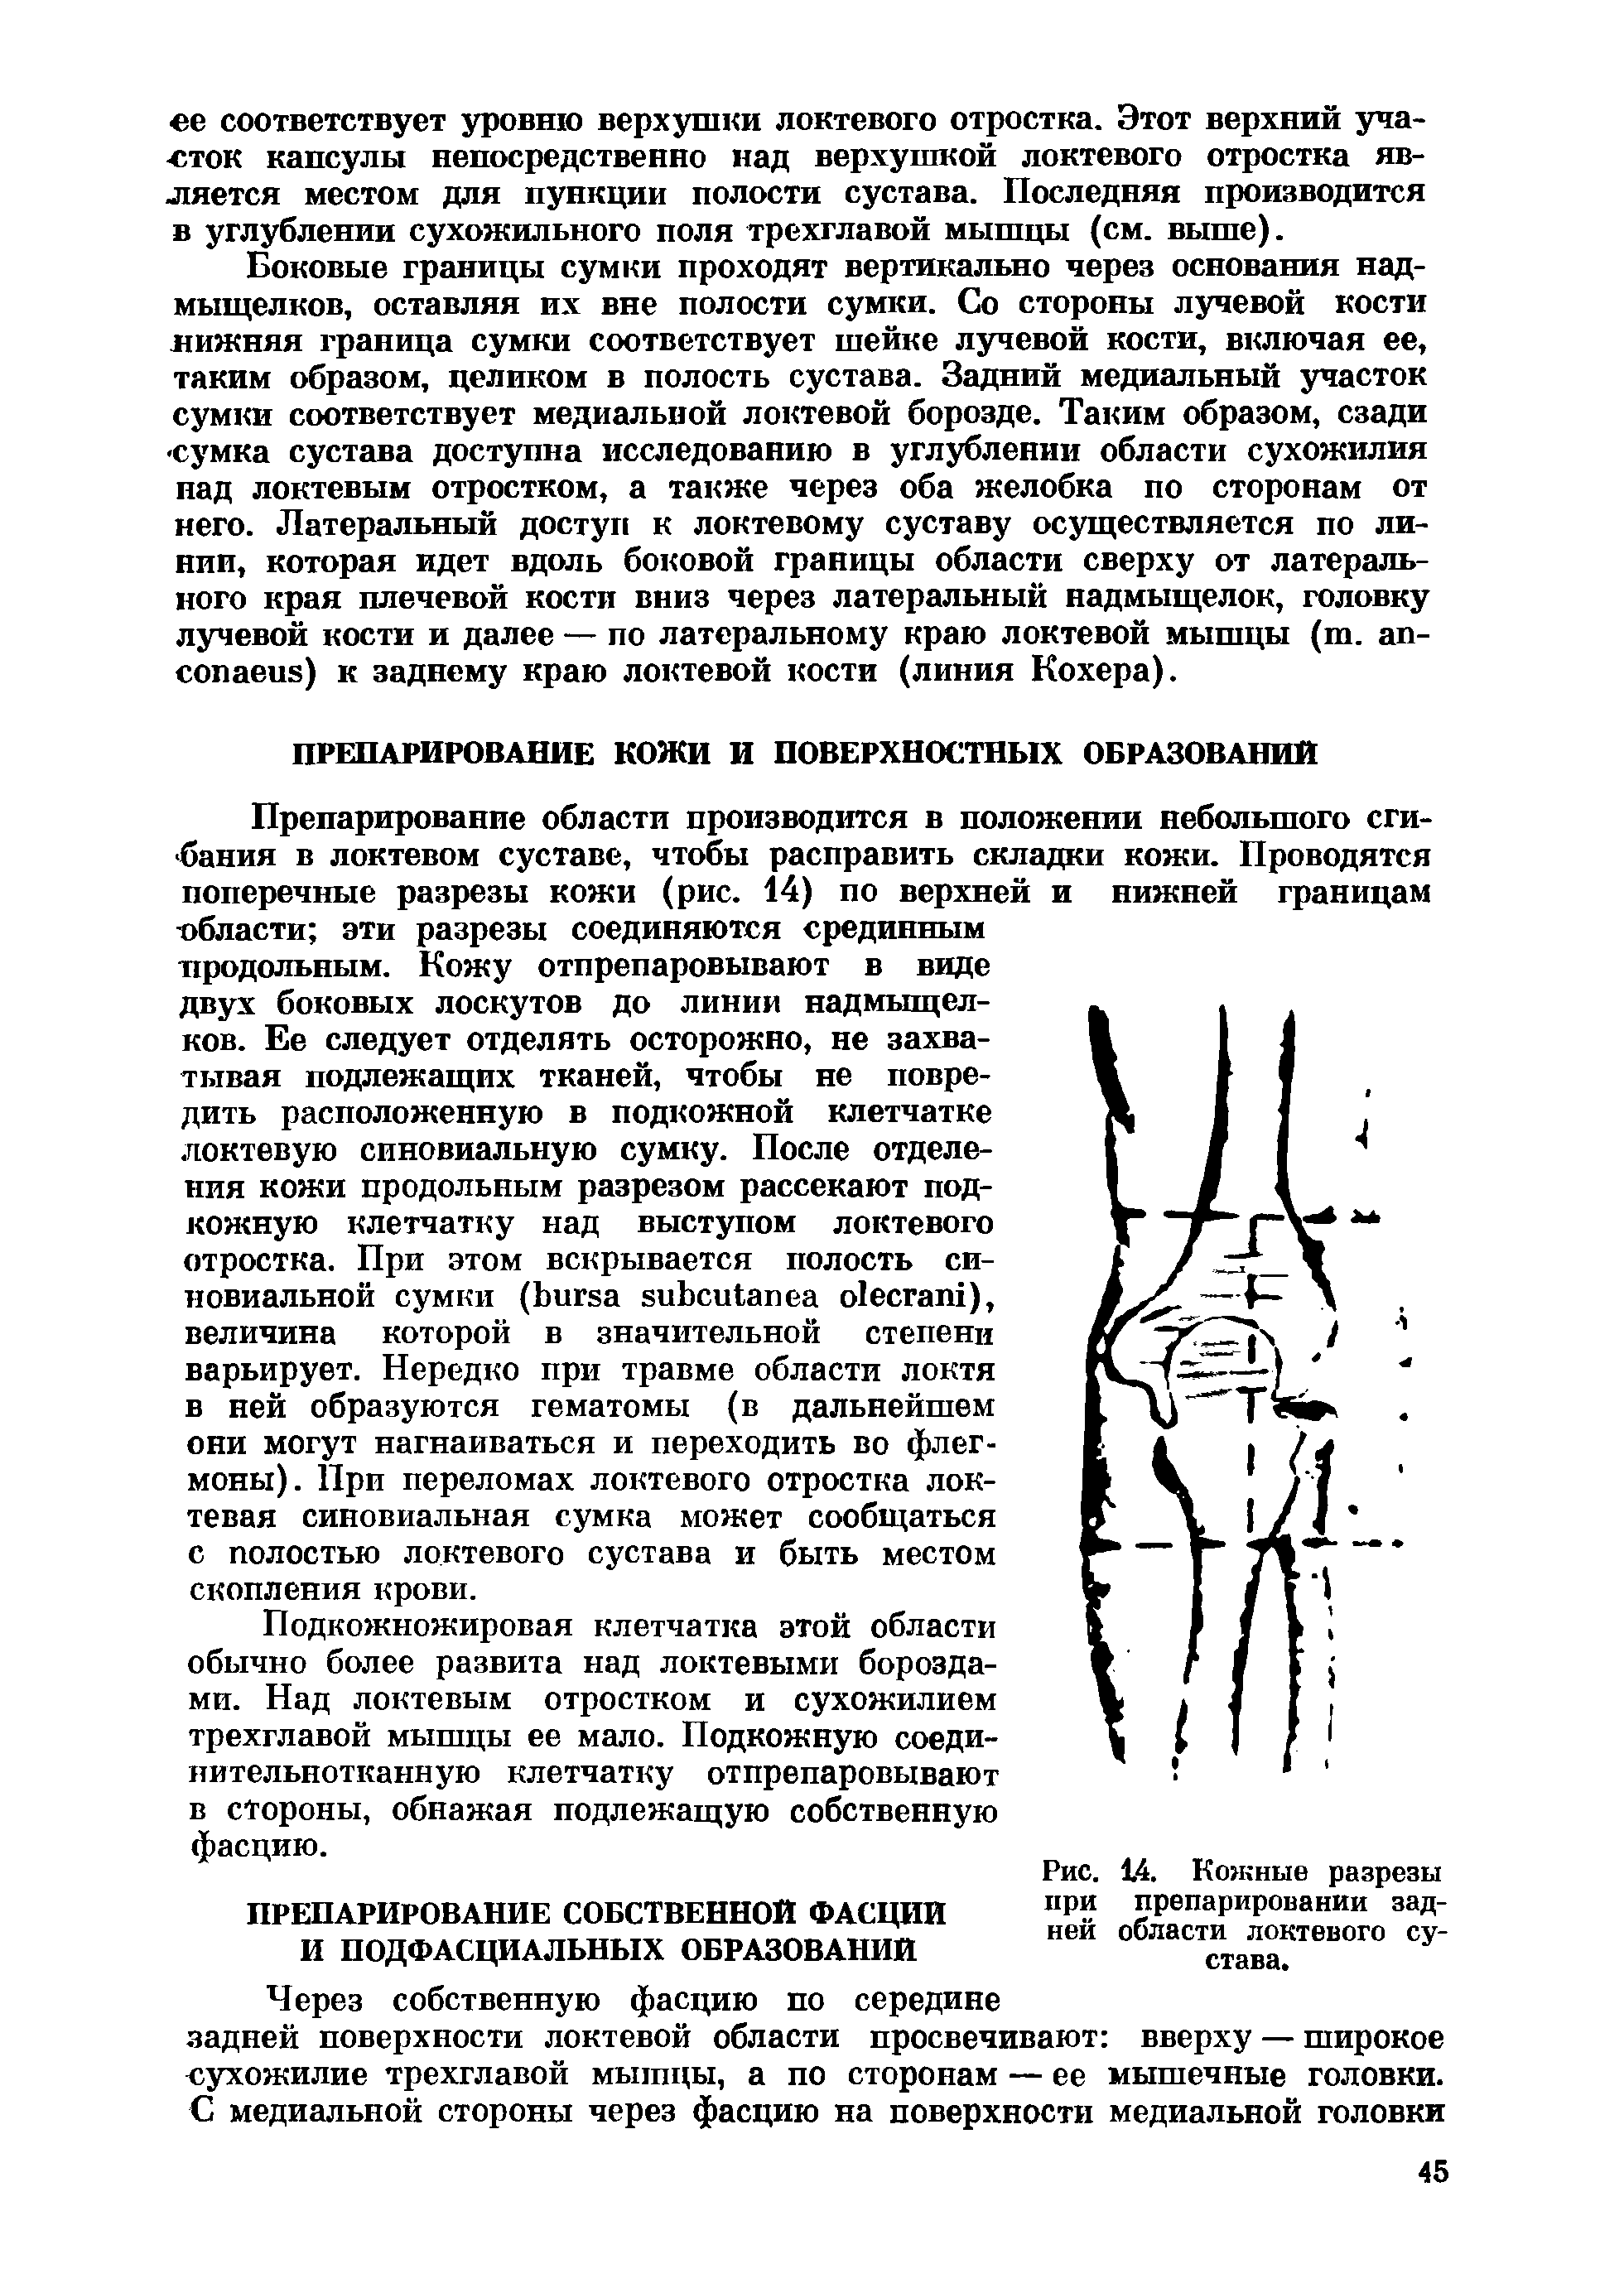 Рис. 14. Кожные разрезы при препарировании задней области локтевого сустава.